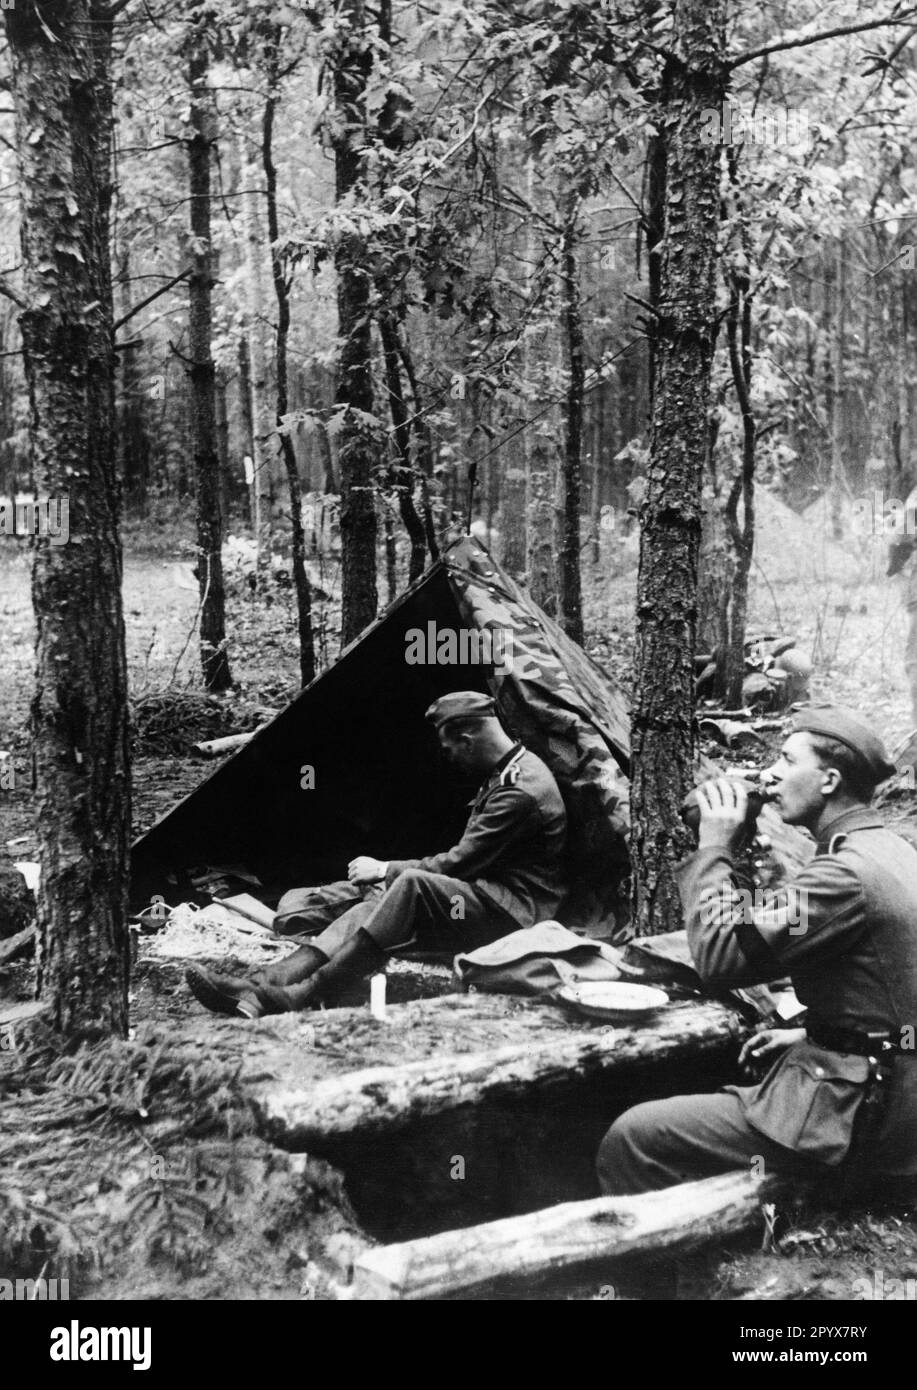 Bivouac des troupes allemandes dans une zone de transit sur la ligne de démarcation germano-russe en Pologne. Photo: Brenner [traduction automatique] Banque D'Images